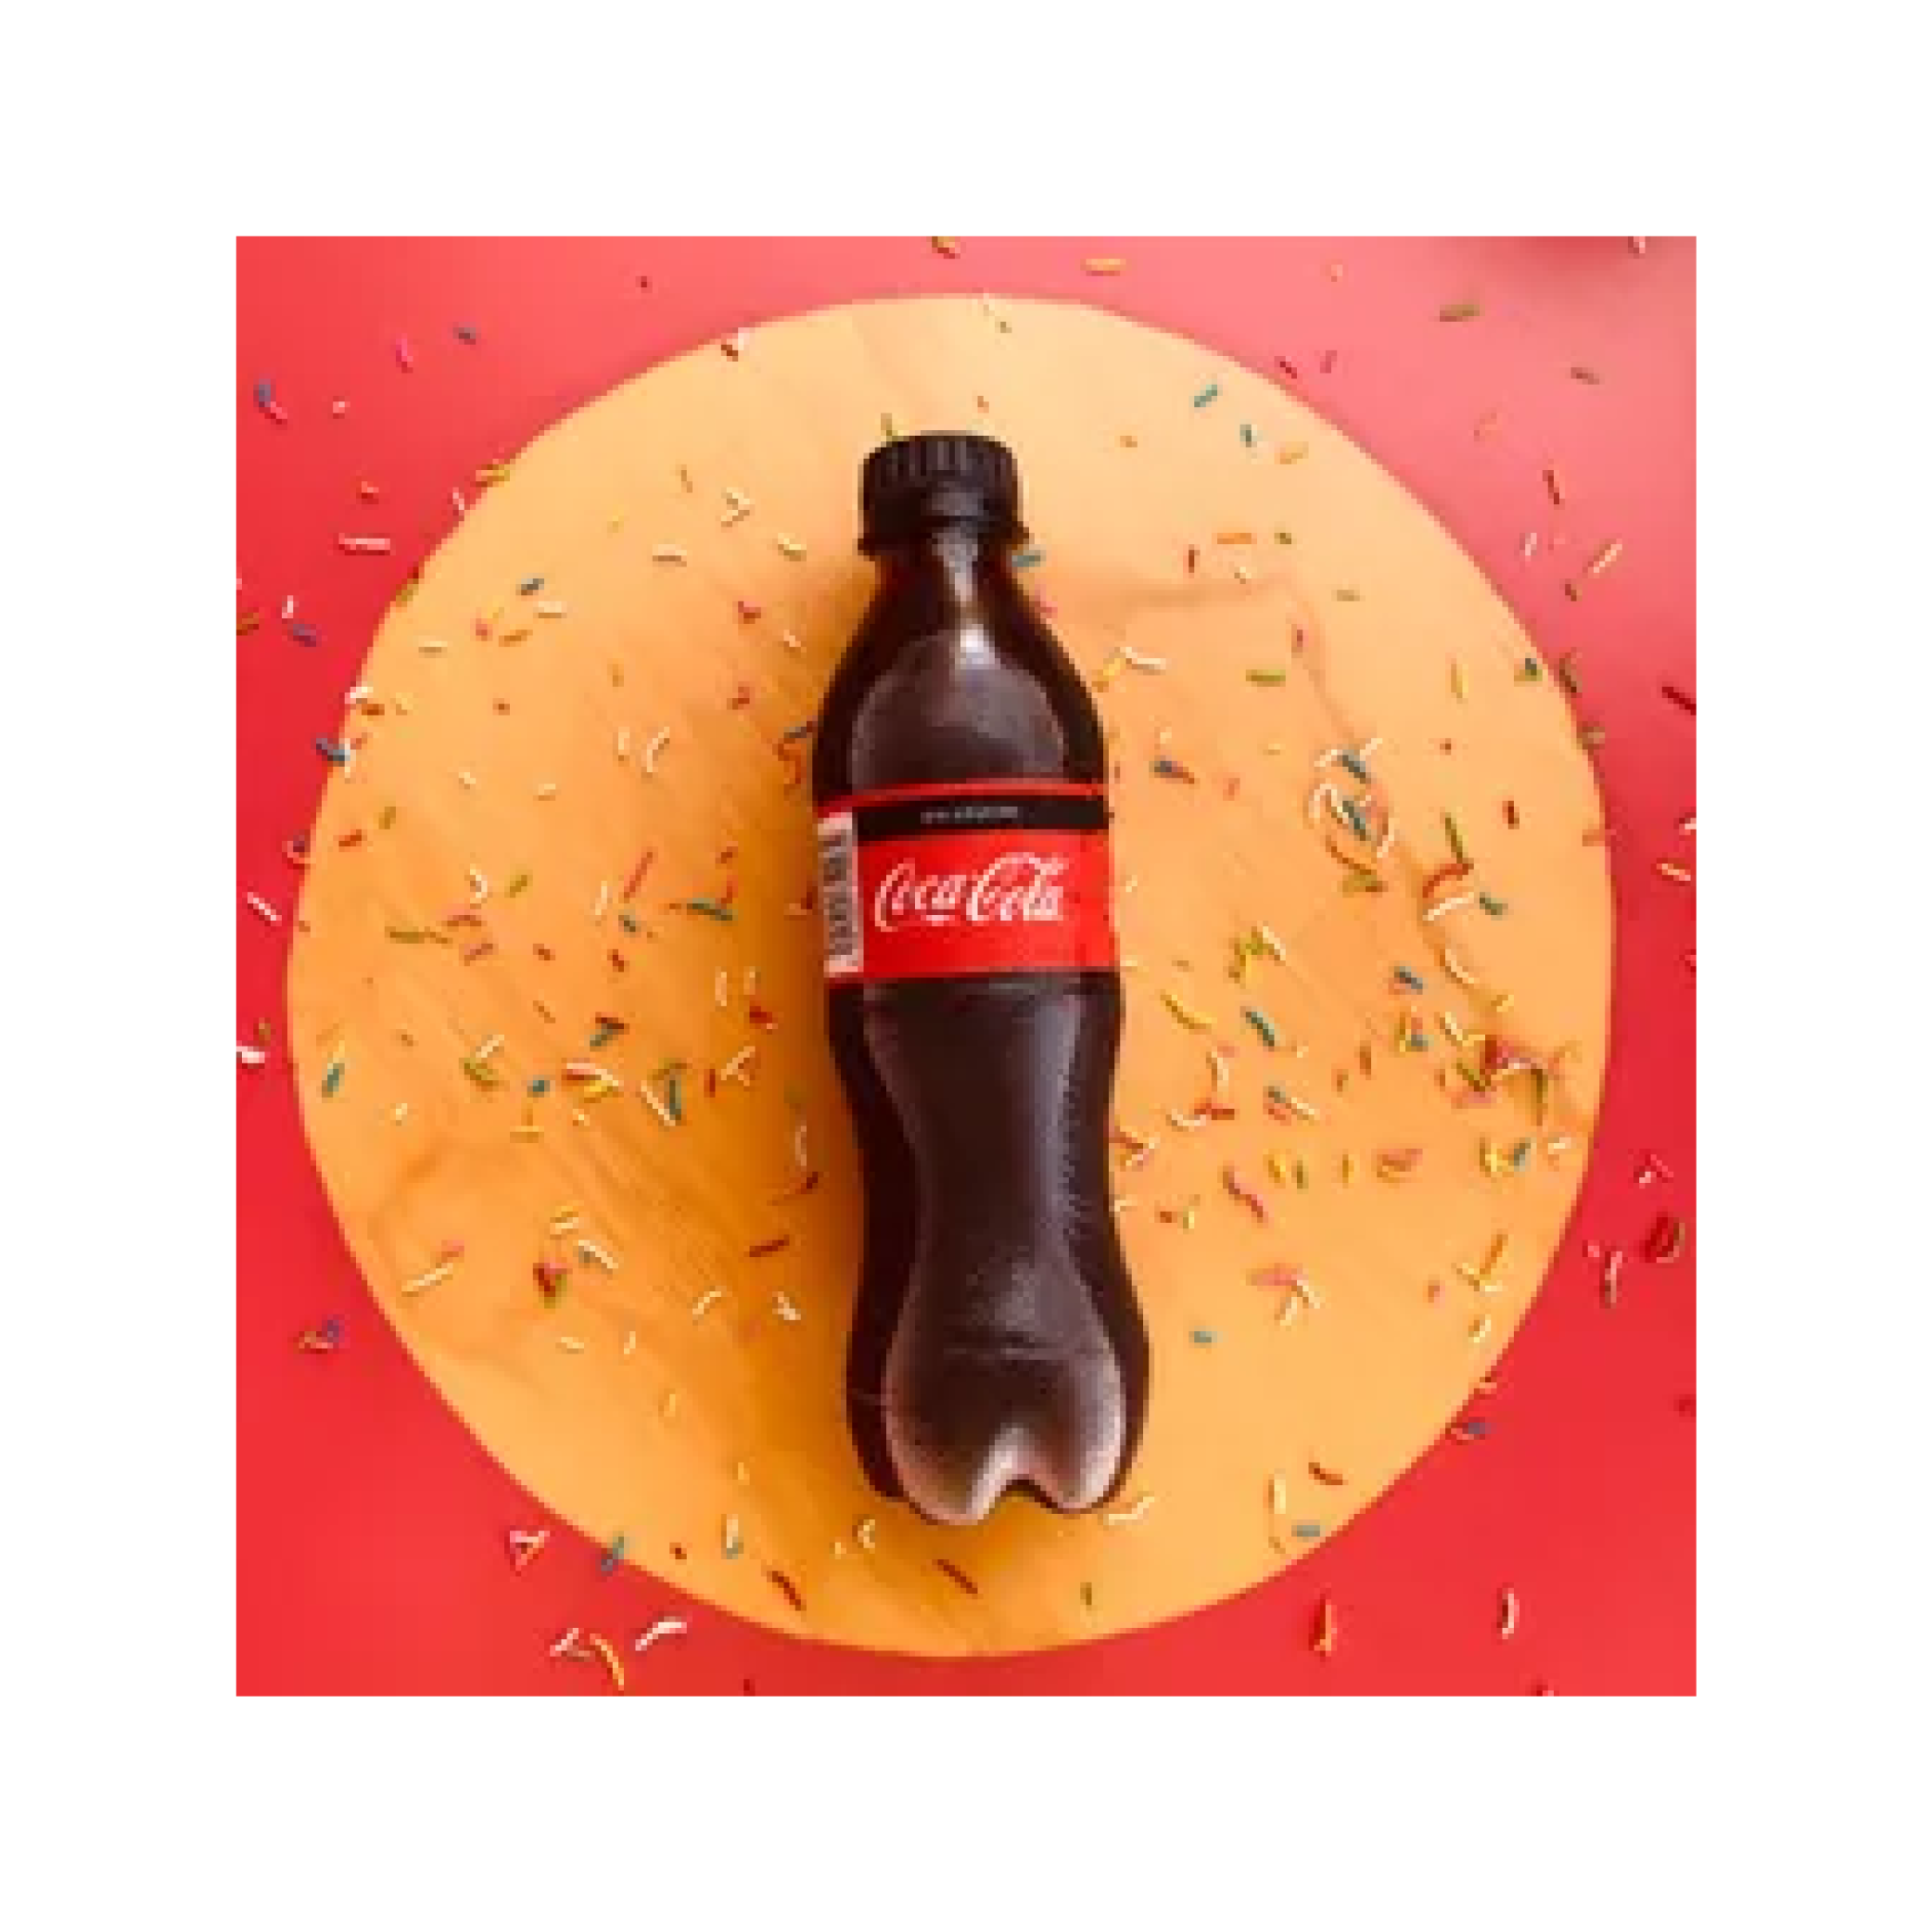 Coca Cola sin azúcar